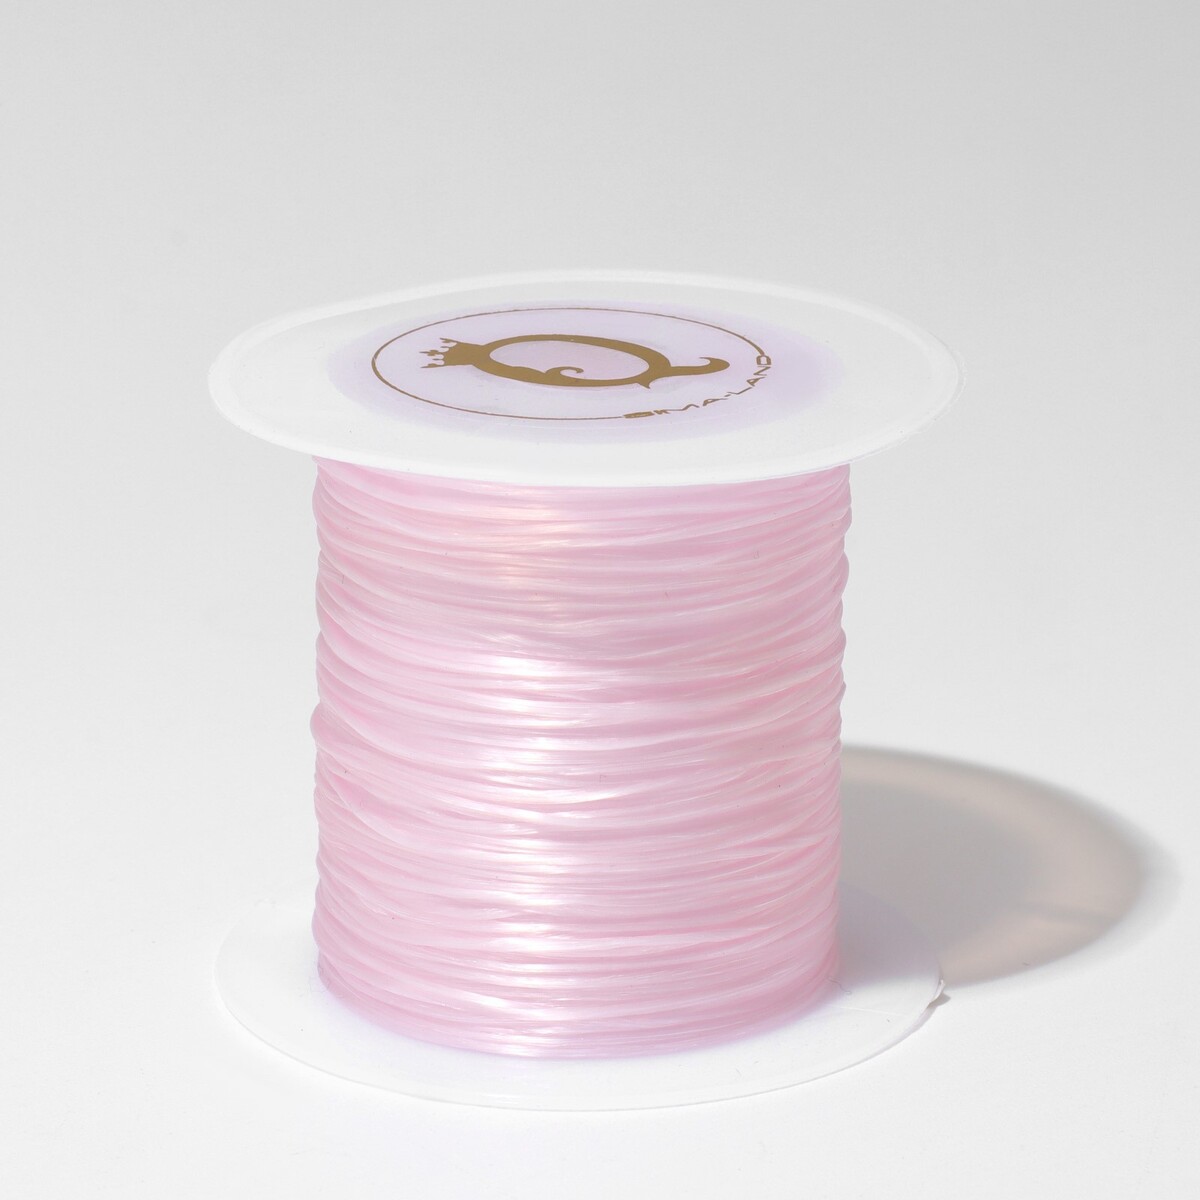 Нить силиконовая (резинка) d=0.5мм, l=10м (прочность 2250 денье), цвет светло-розовый Queen fair